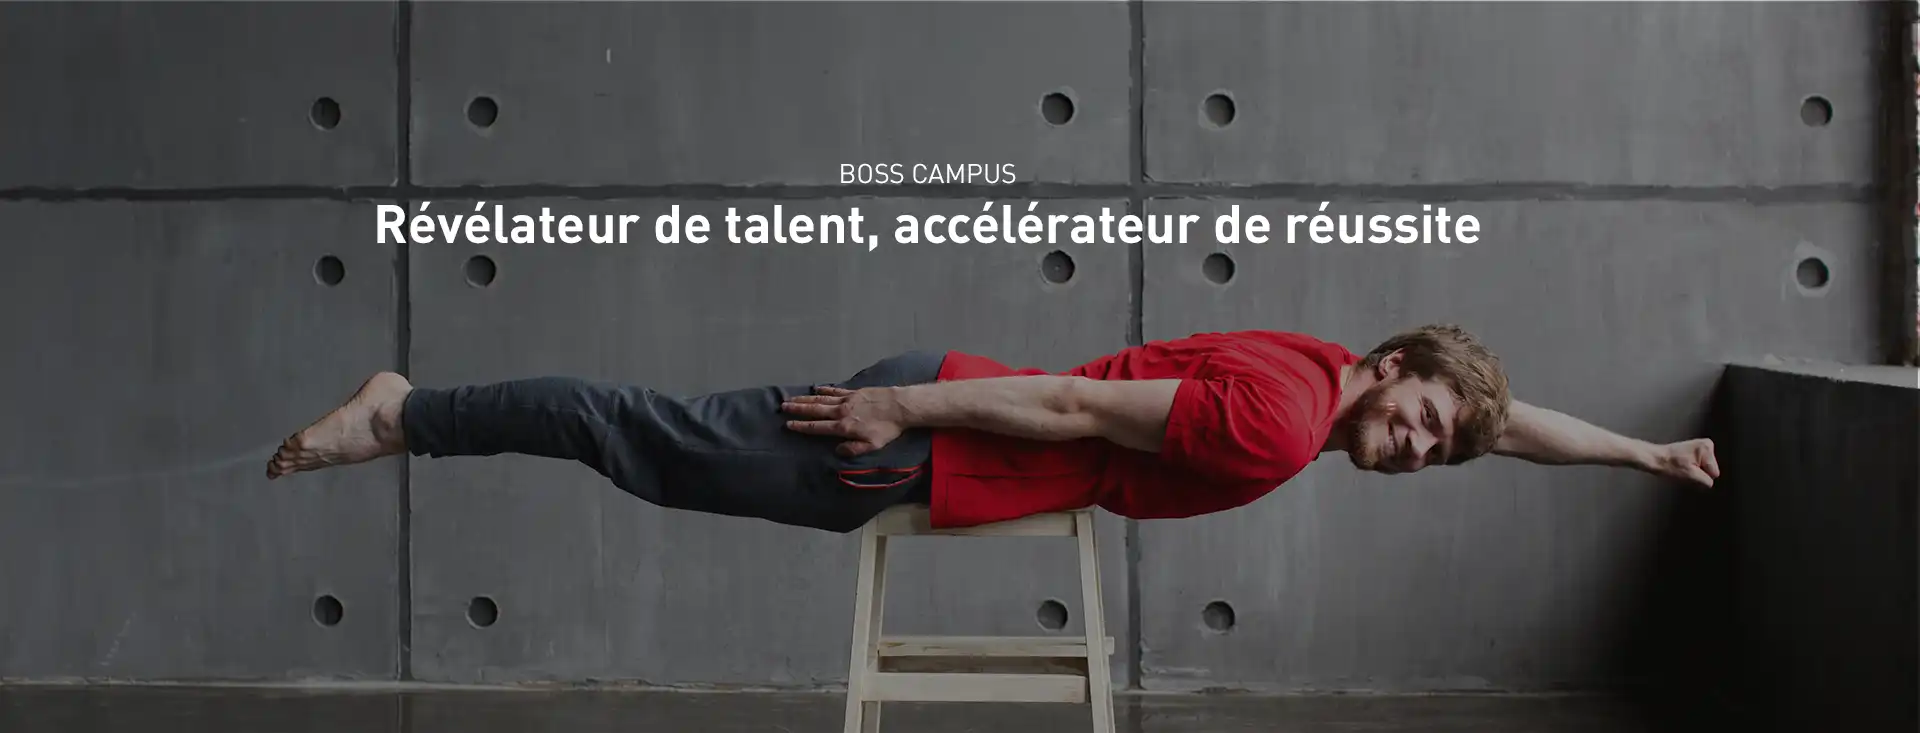 Boss Campus : Révélateur de talent, accélérateur de réussite